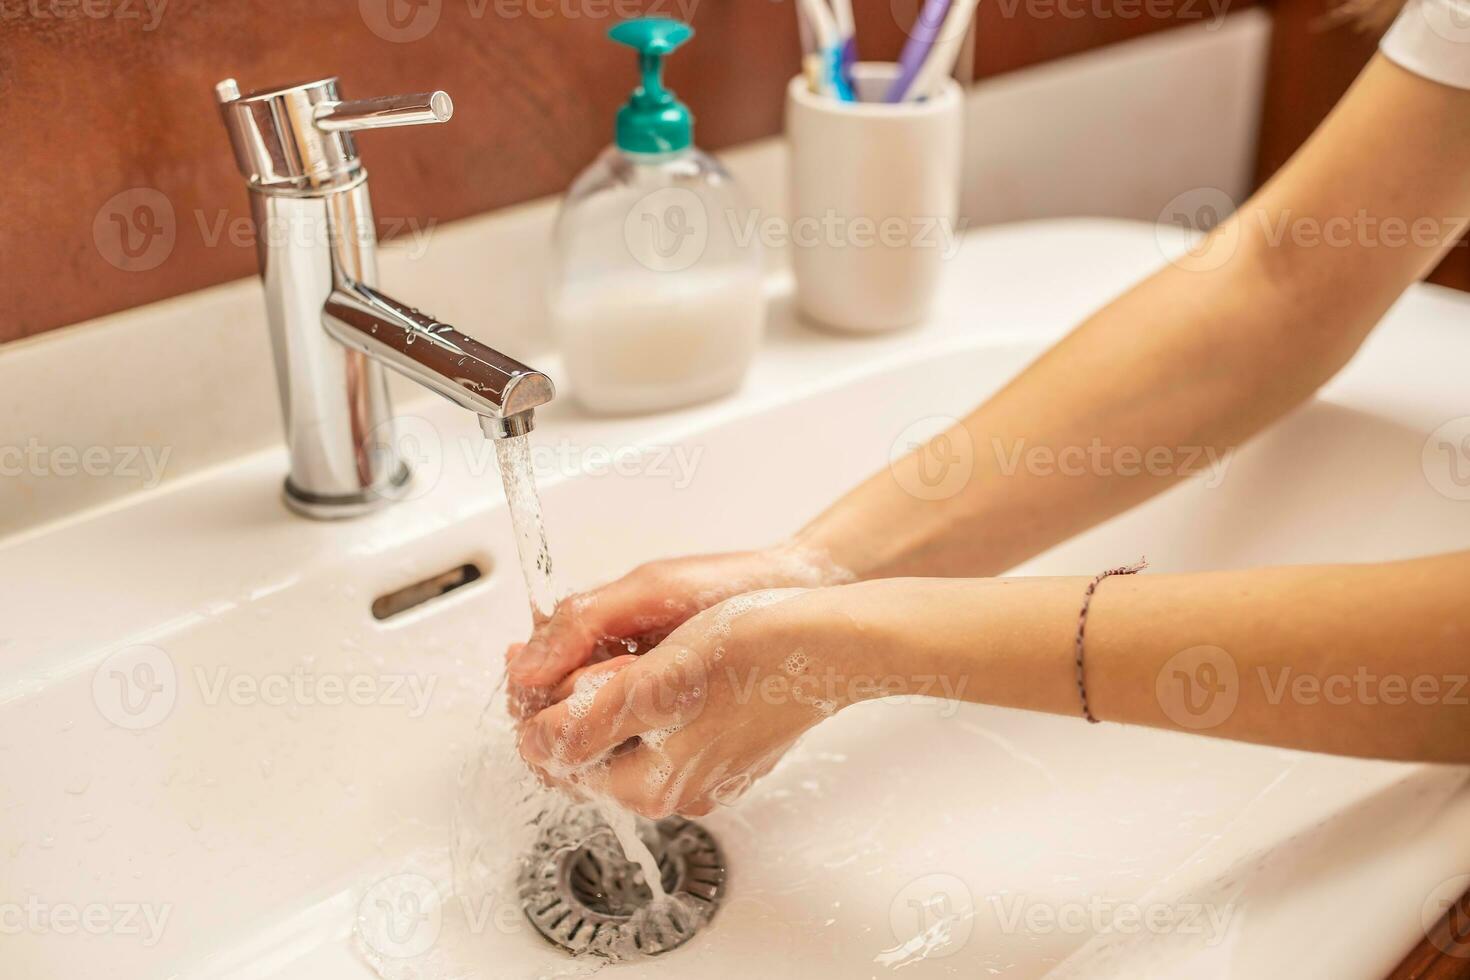 Lavado manos con agua y líquido jabón en el baño foto